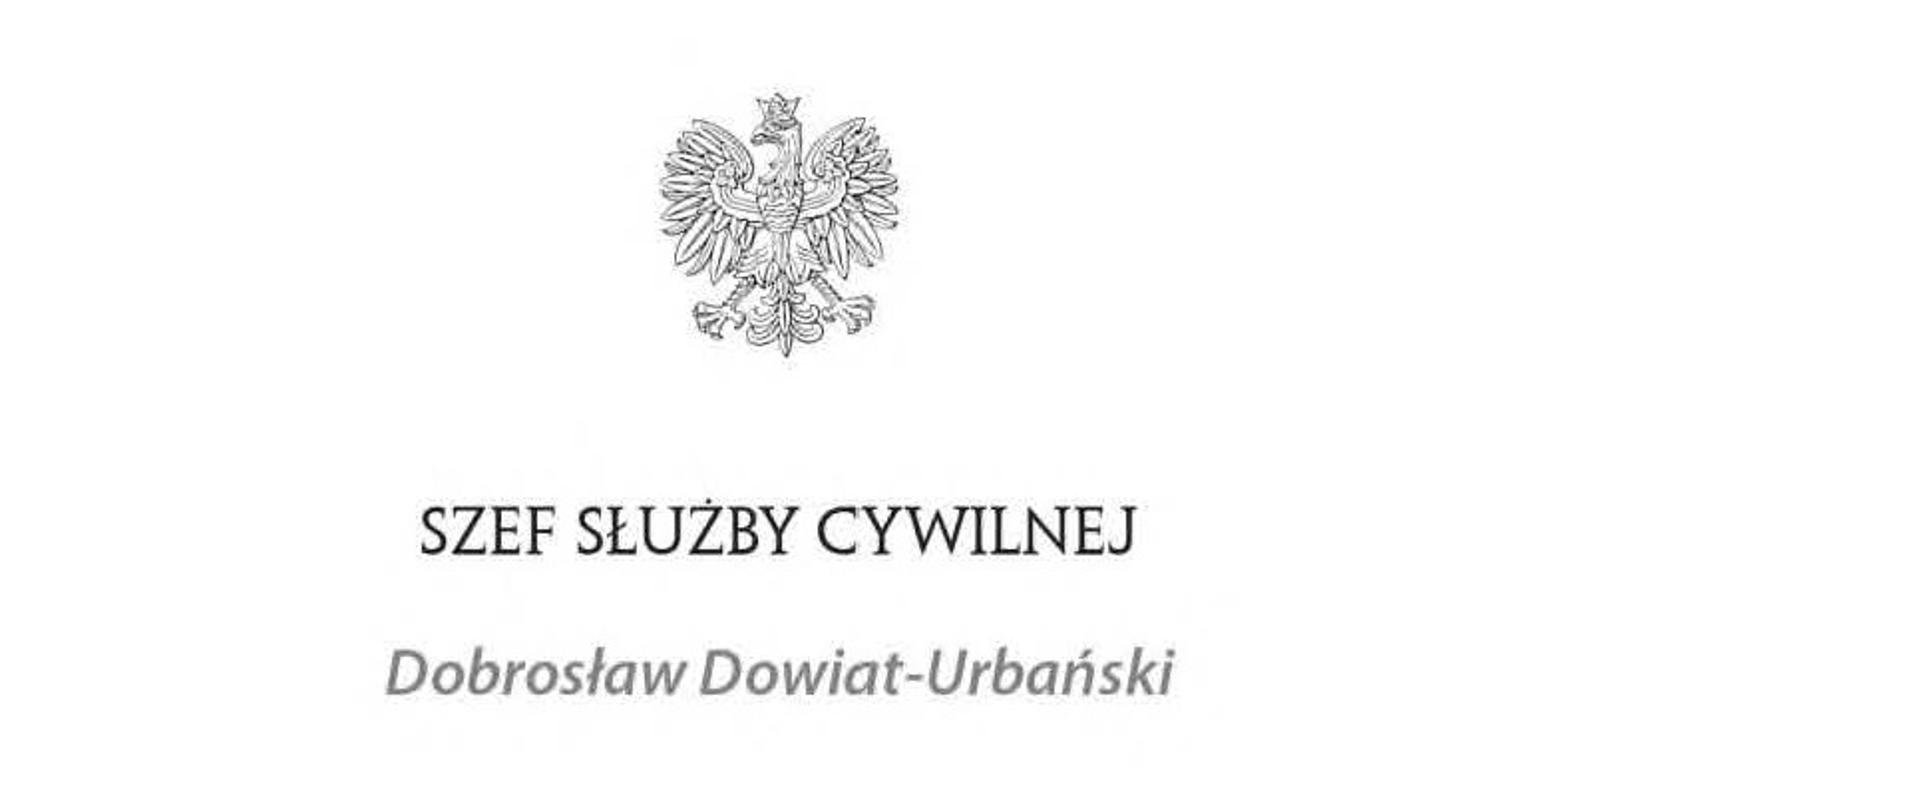 Godło czarnobiałe a pod nim napis Szef Służby Cywilnej Dobrosław Dowiat-Urbański